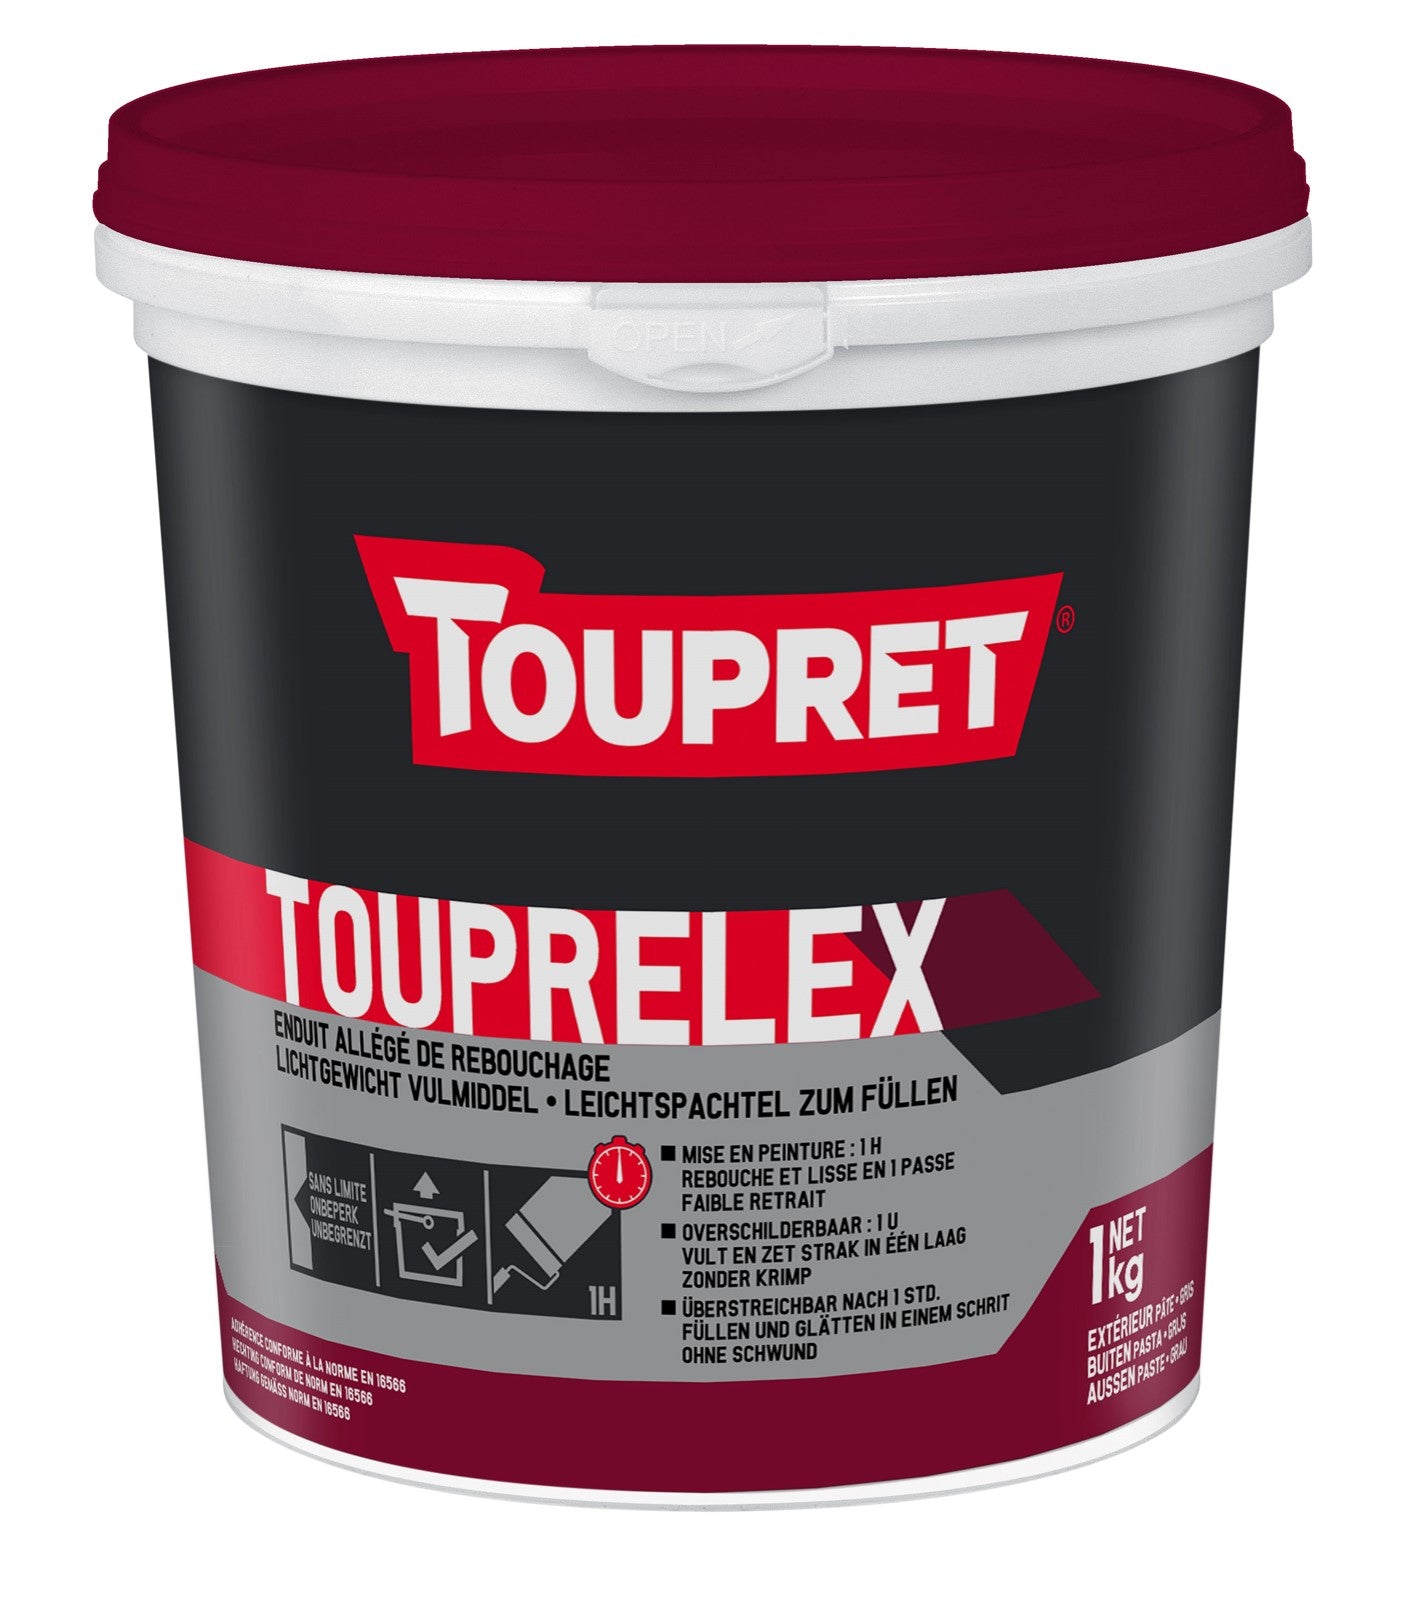 TOUPRET ENDUIT TOUPRELEX - REBOUCHAGE EXTERIEUR 1L